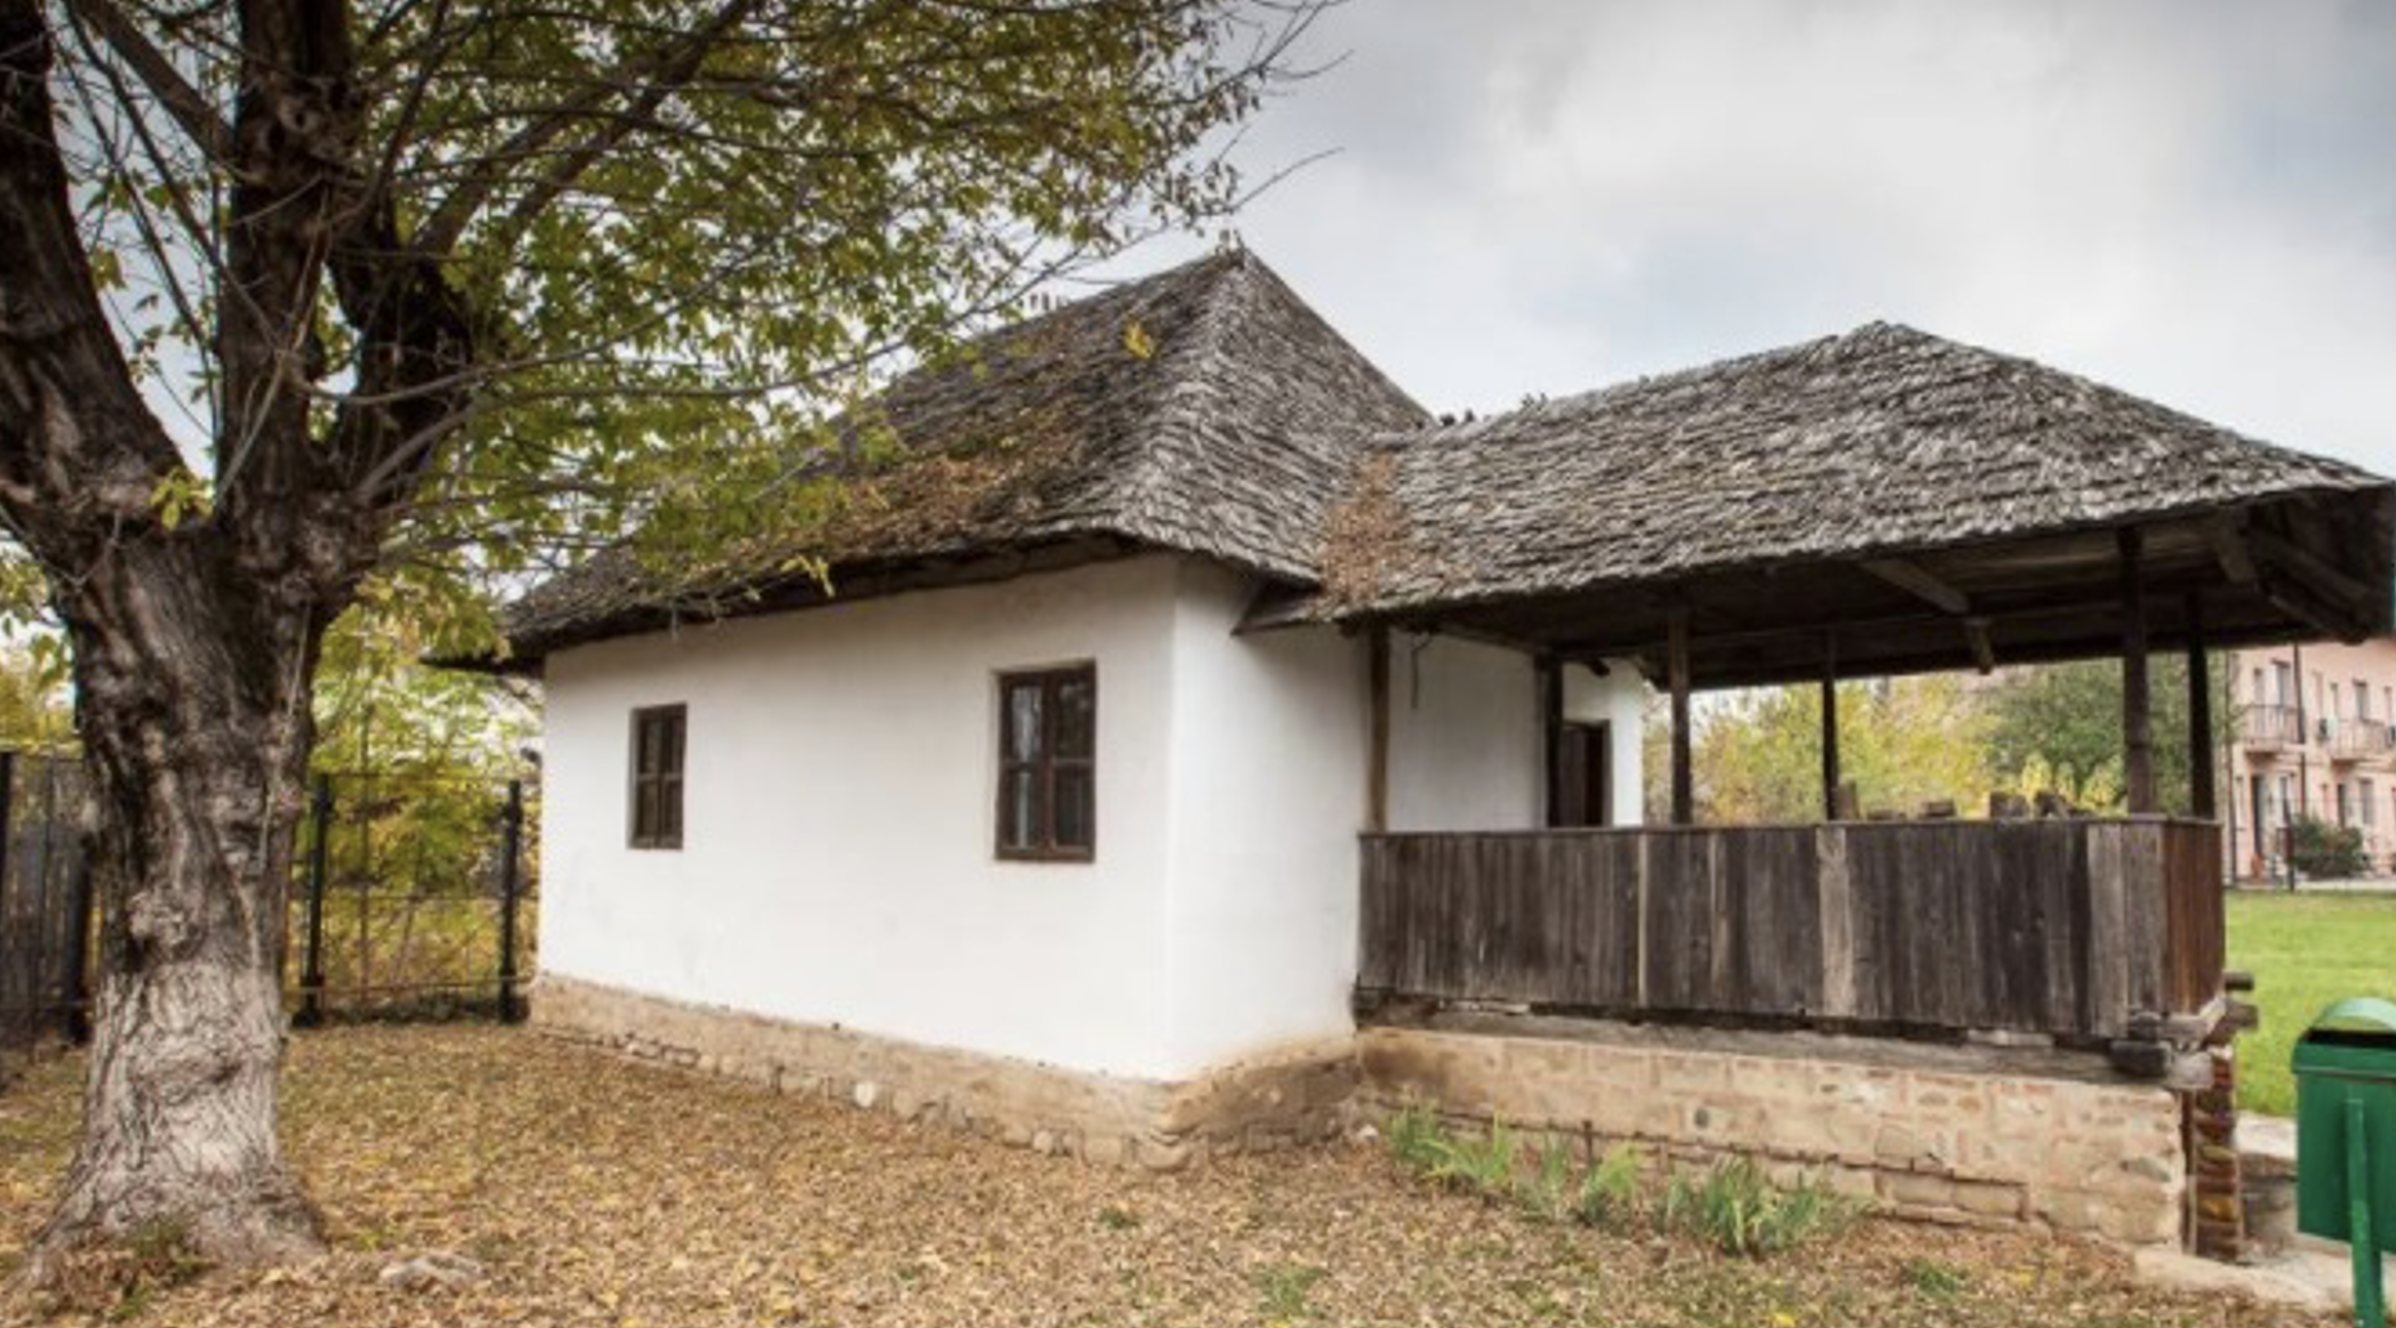 Moldoveanu House - one of the oldest houses in Târgovişte